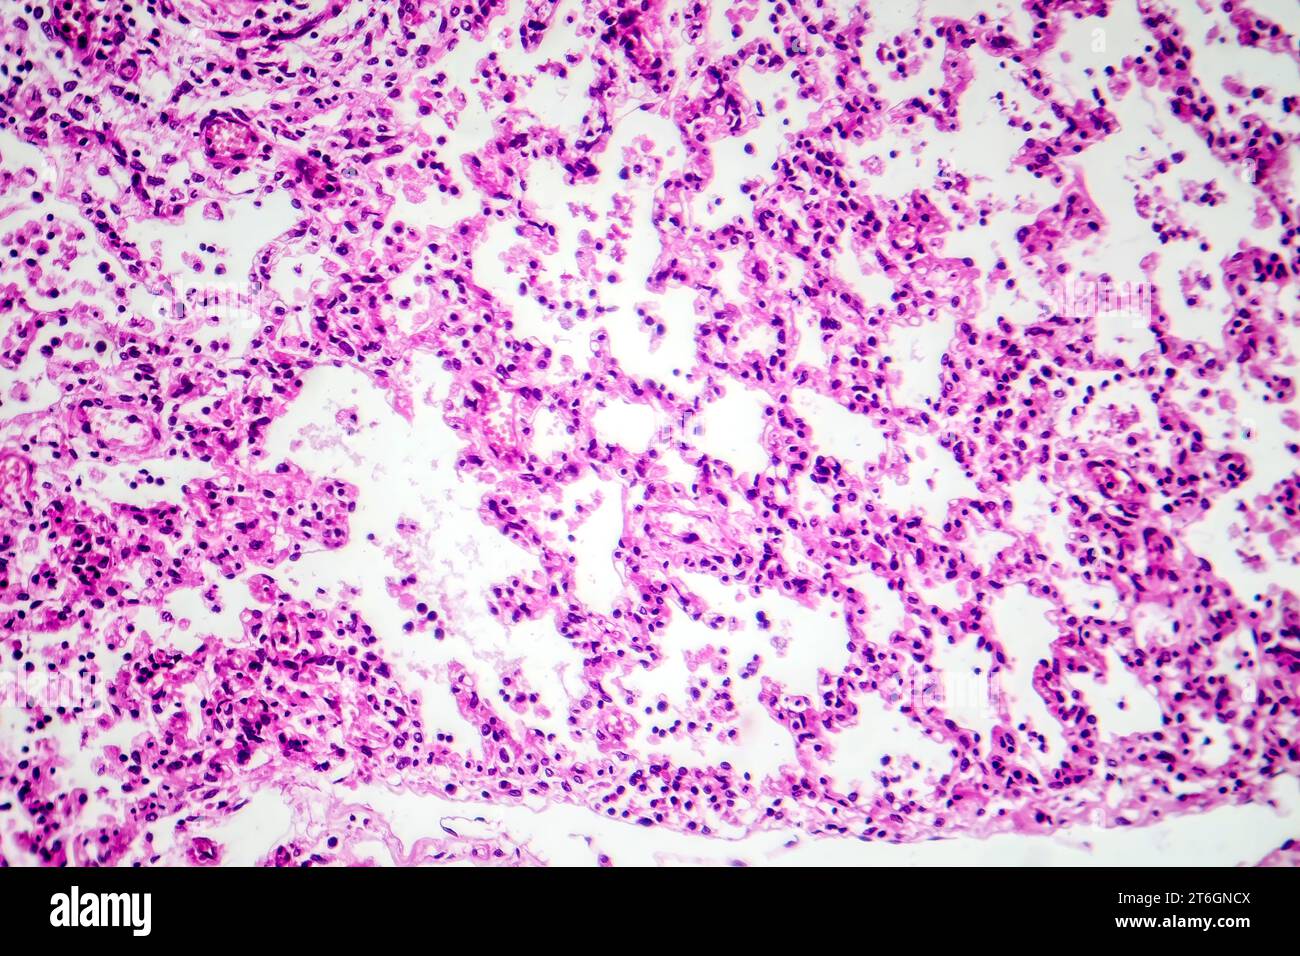 Fotomicrografia della broncopolmonite, che illustra l'infiammazione e il consolidamento del tessuto polmonare dovuto a infezione batterica. Foto Stock